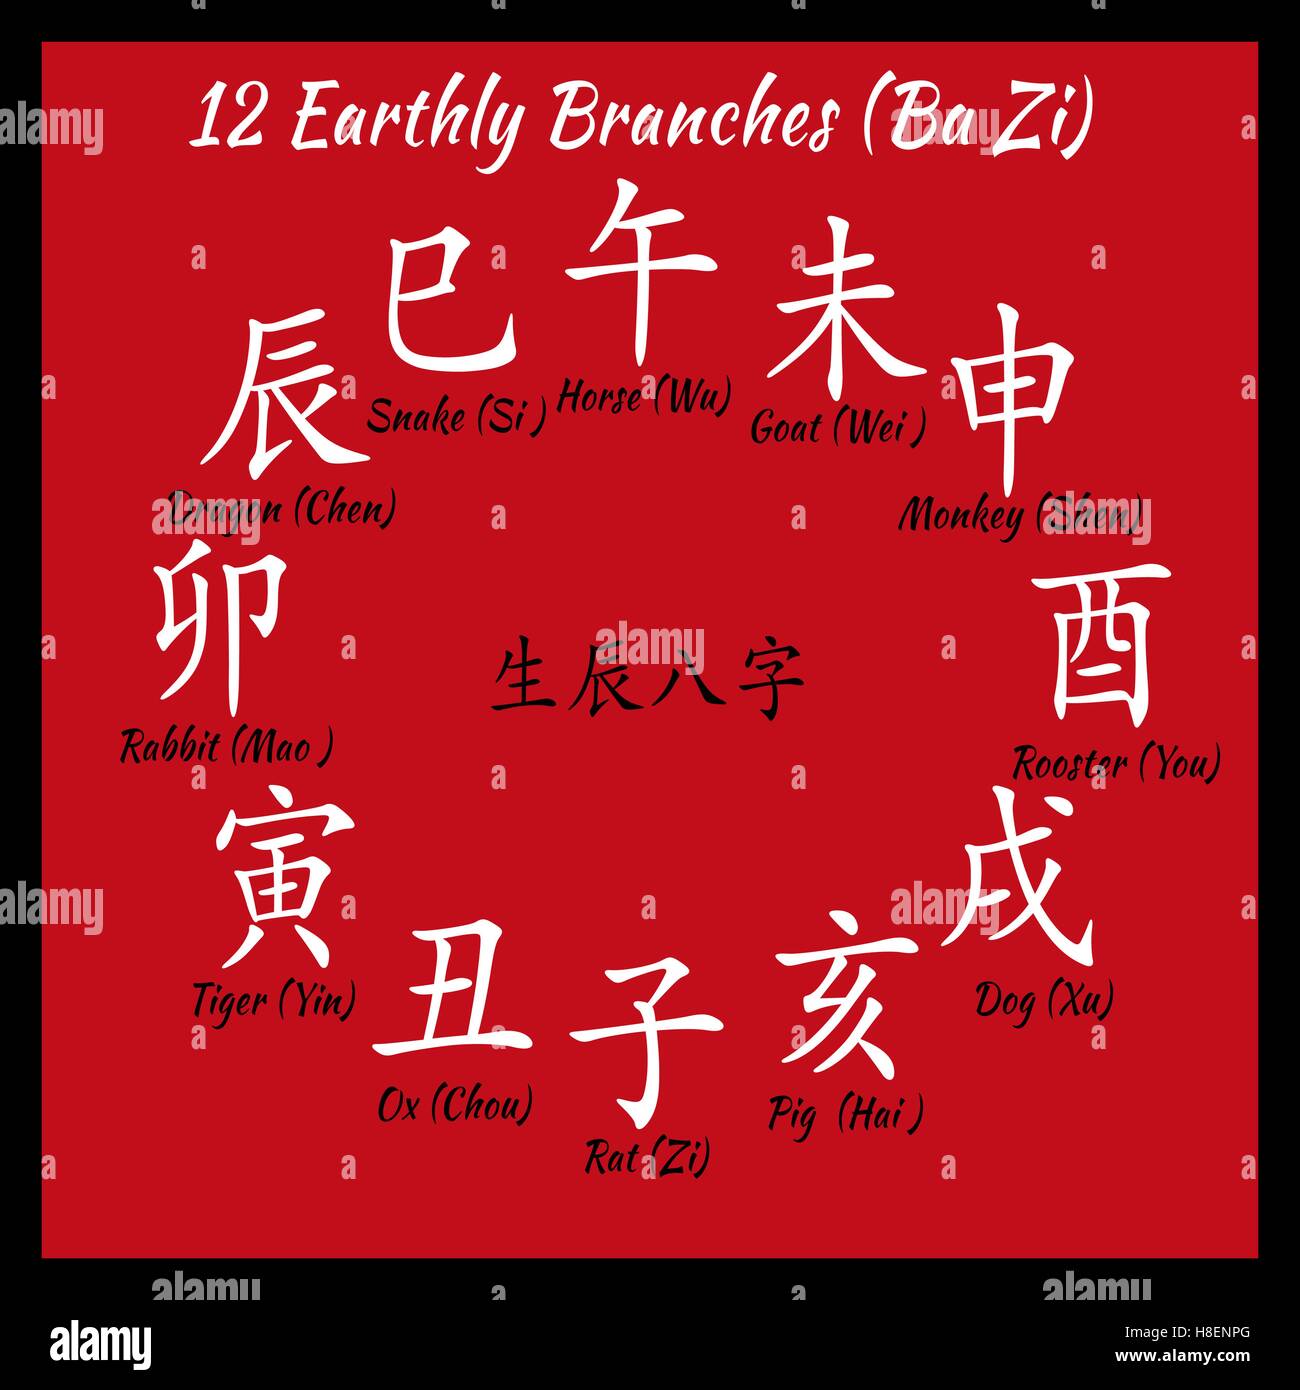 chinese writing translation alphabet